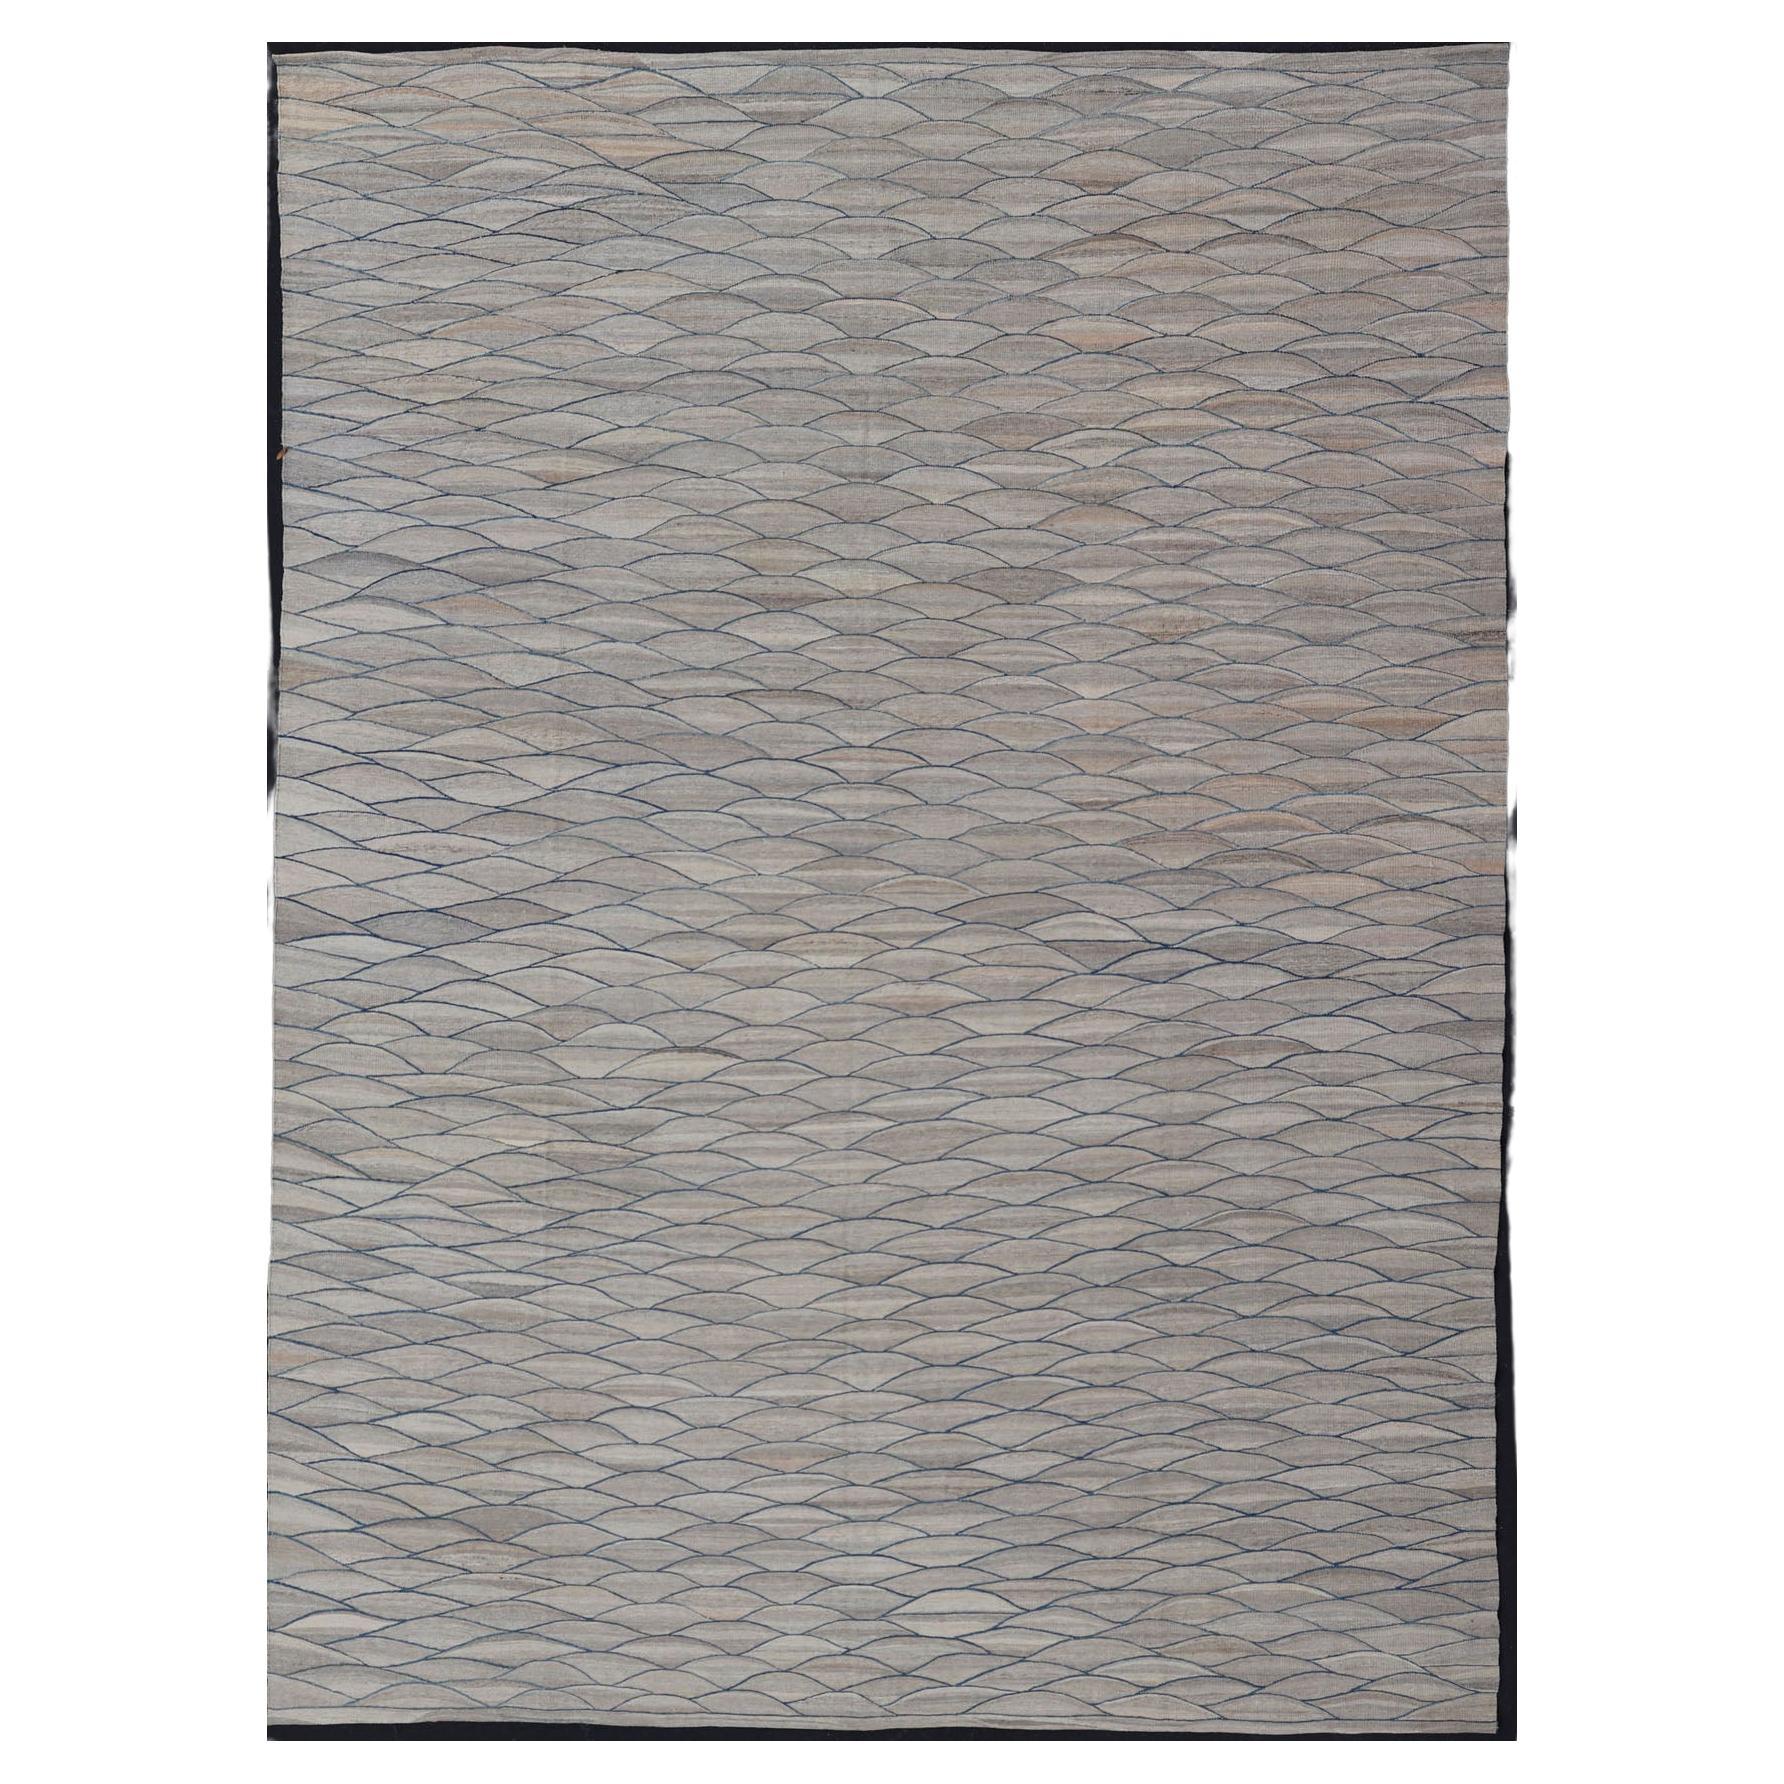 Grand Kilim moderne à tissage plat en laine avec des nuances de gris et de bleu riche